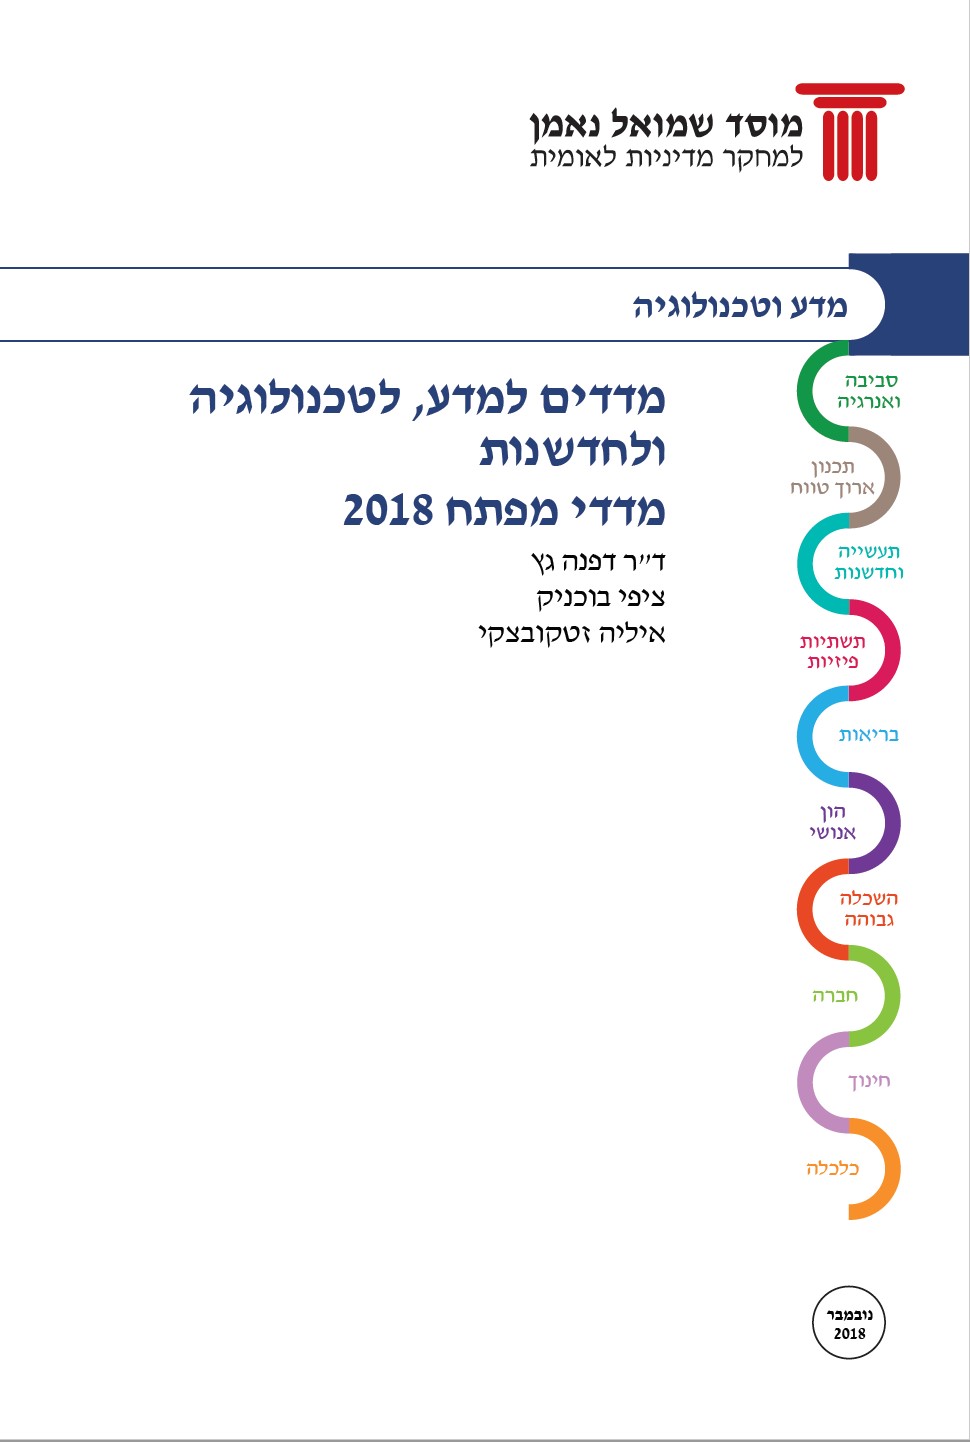 מדדים למדע, לטכנולוגיה ולחדשנות בישראל: תשתית נתונים השוואתית מדדי מפתח